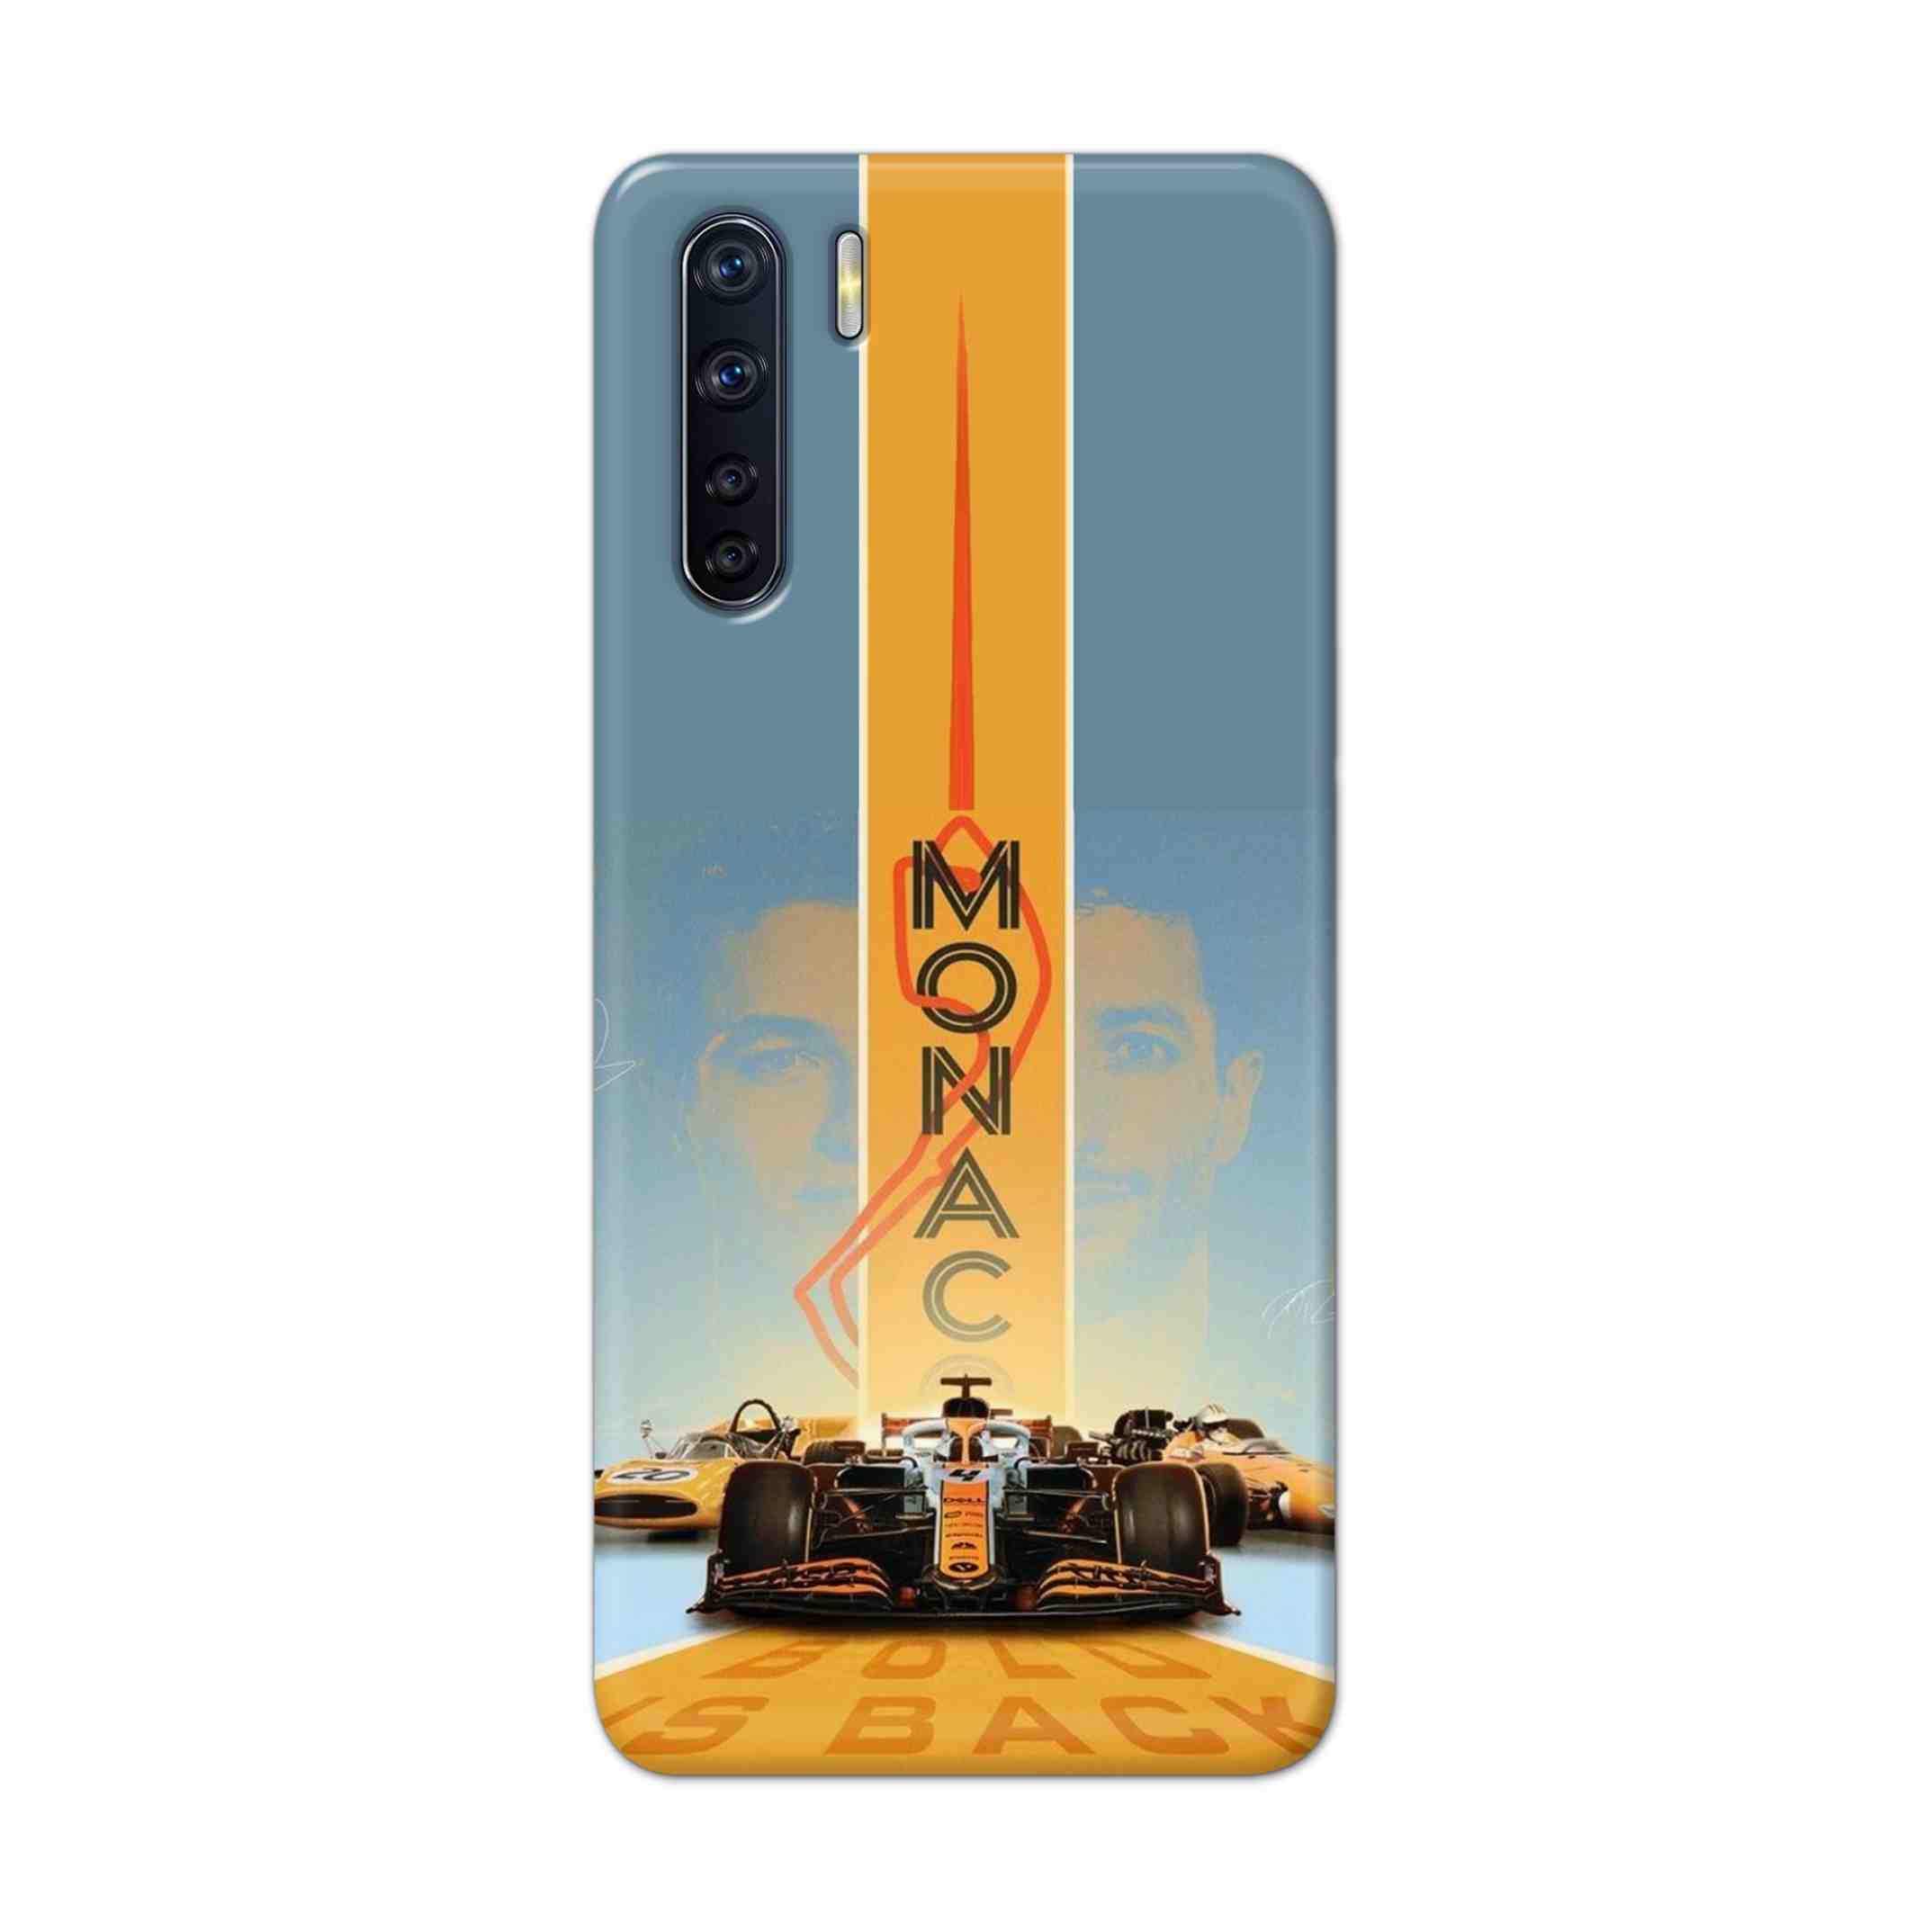 Buy Monac Formula Hard Back Mobile Phone Case Cover For OPPO F15 Online